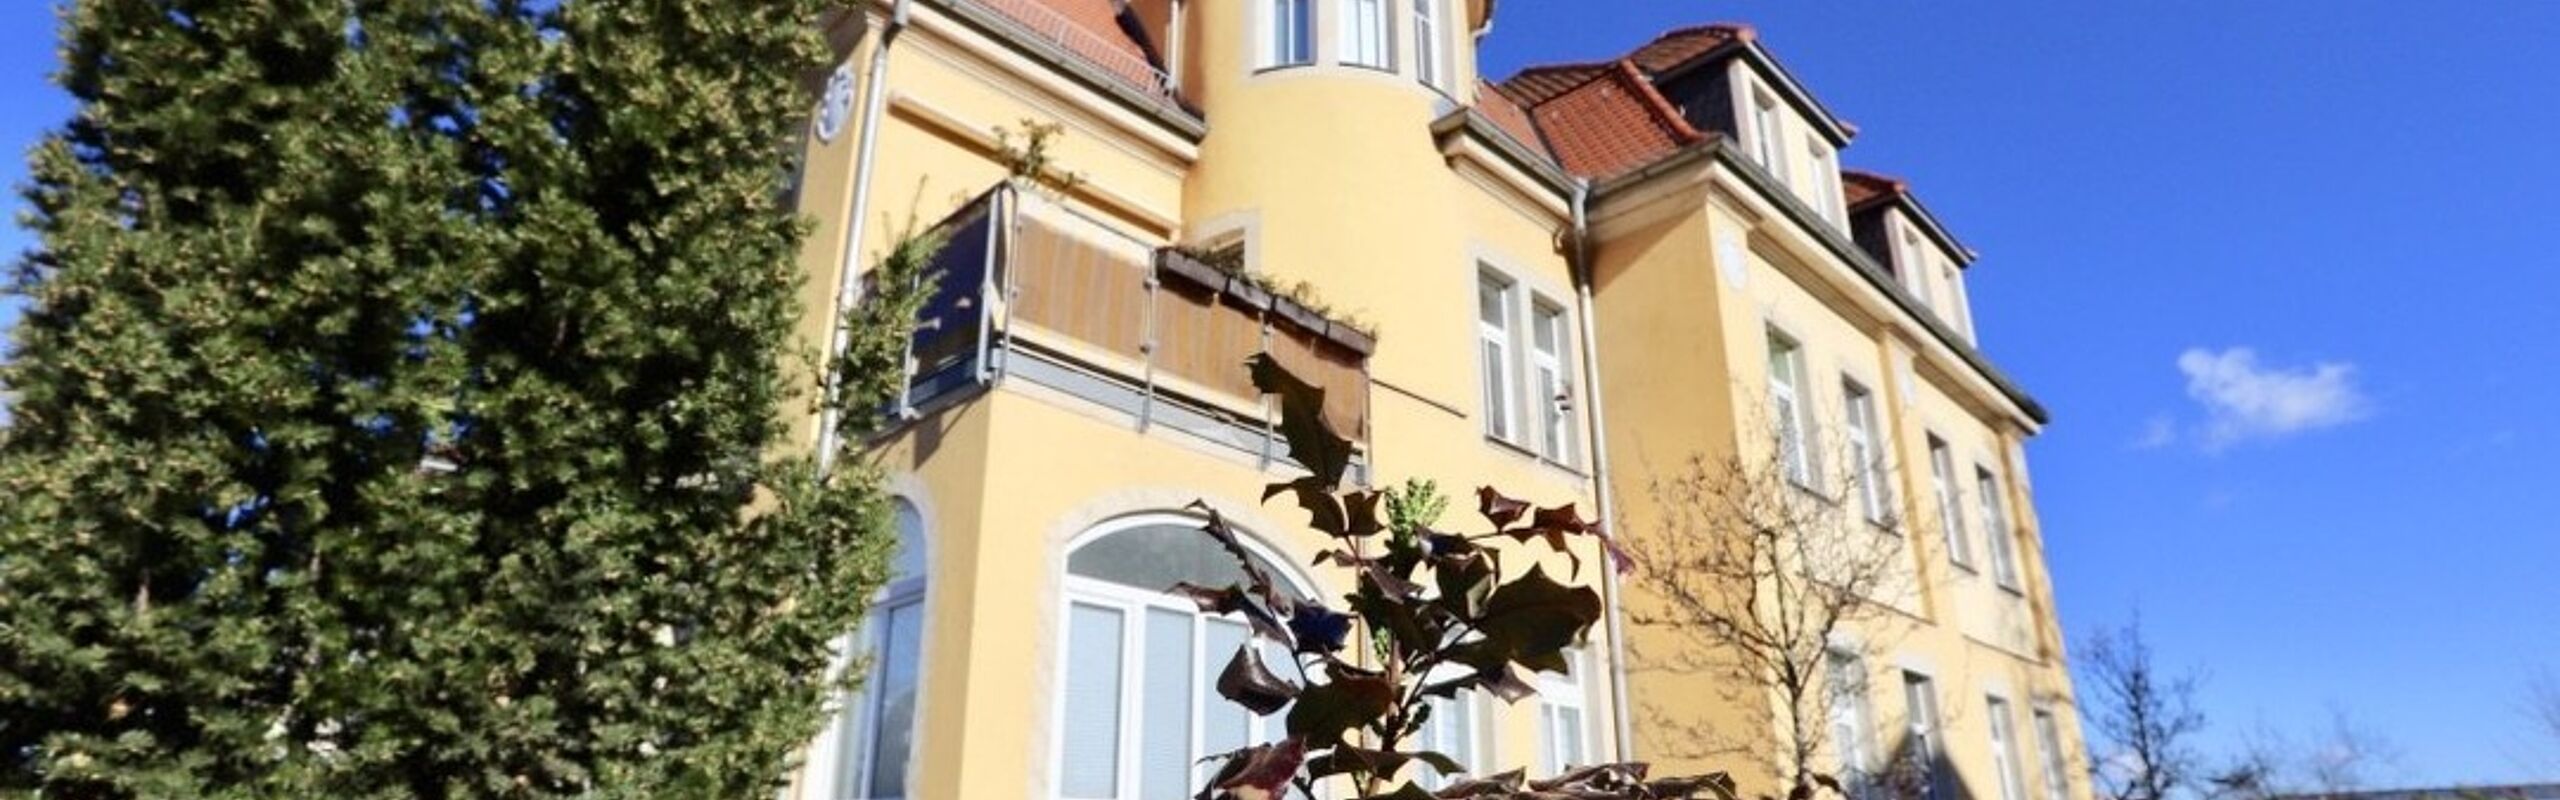 +++ Bezugsfrei ab 01.06.2019 - 2-Zimmer-Wohnung mit offener Loggia in liebevoll sanierter Villa +++